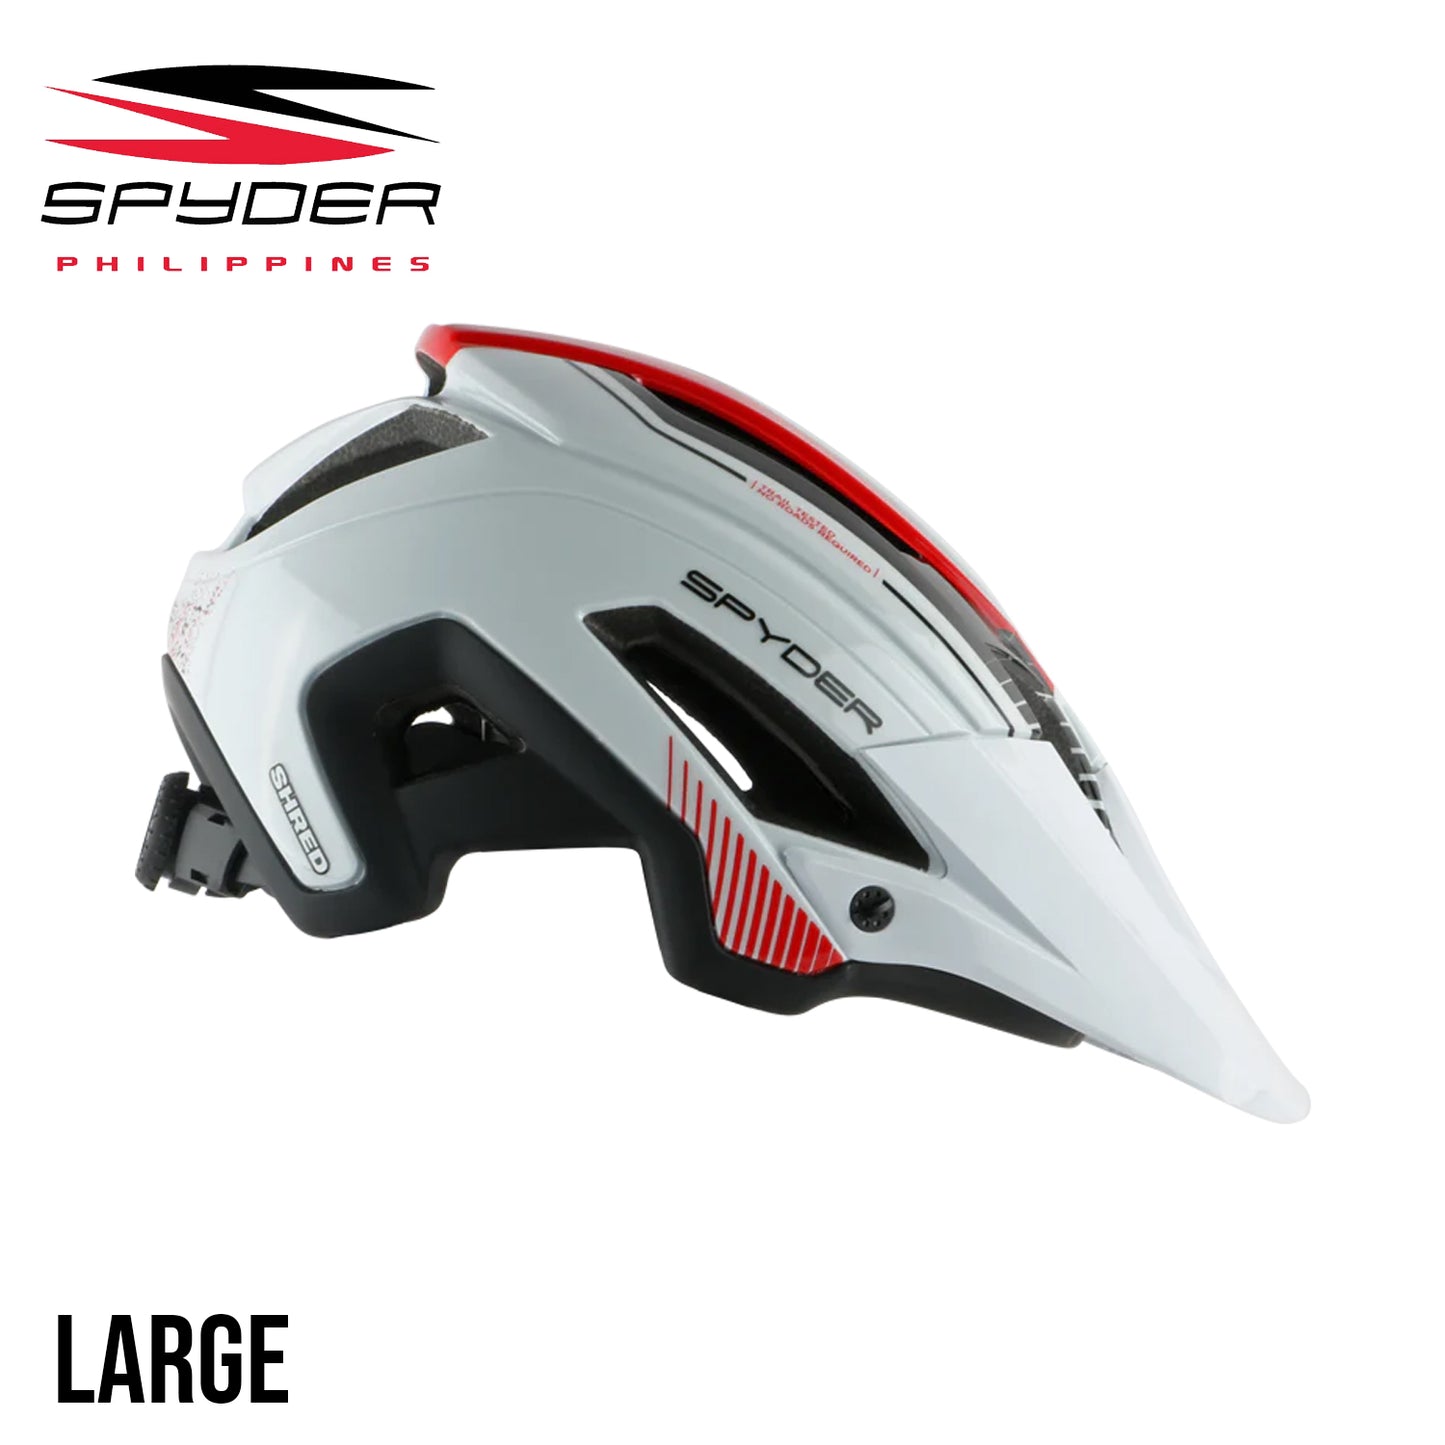 Spyder SHRED All-Mountain / Trail MTB Bike Helmet - White/Red